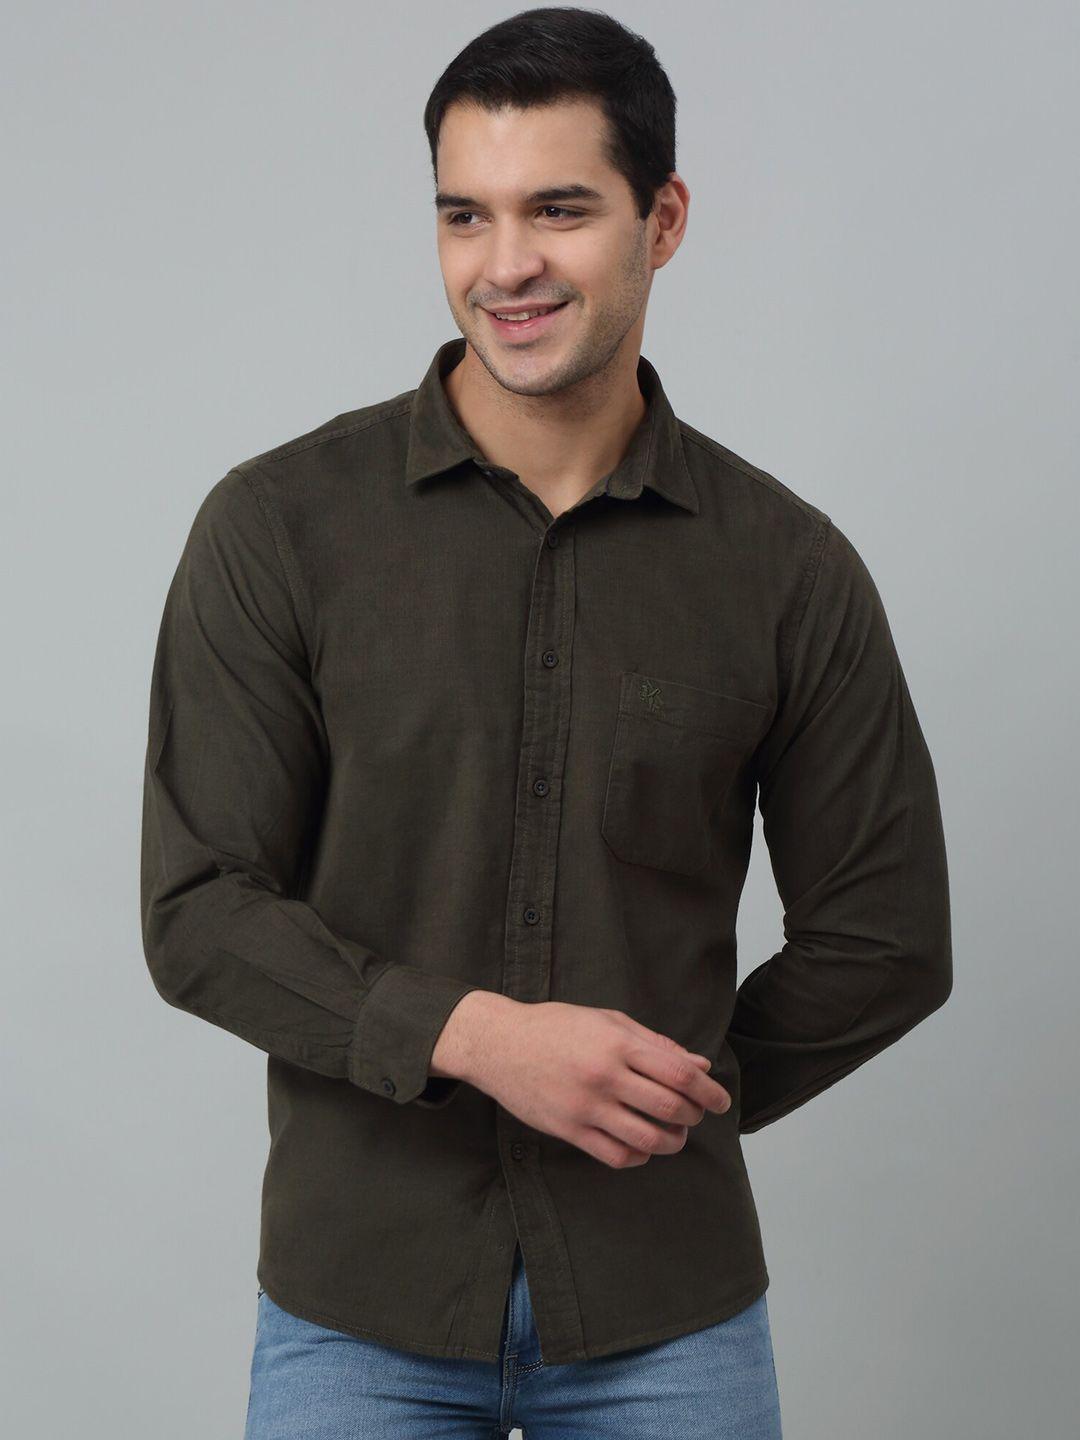 cantabil comfort regular fit spread collar long sleeves formal shirt